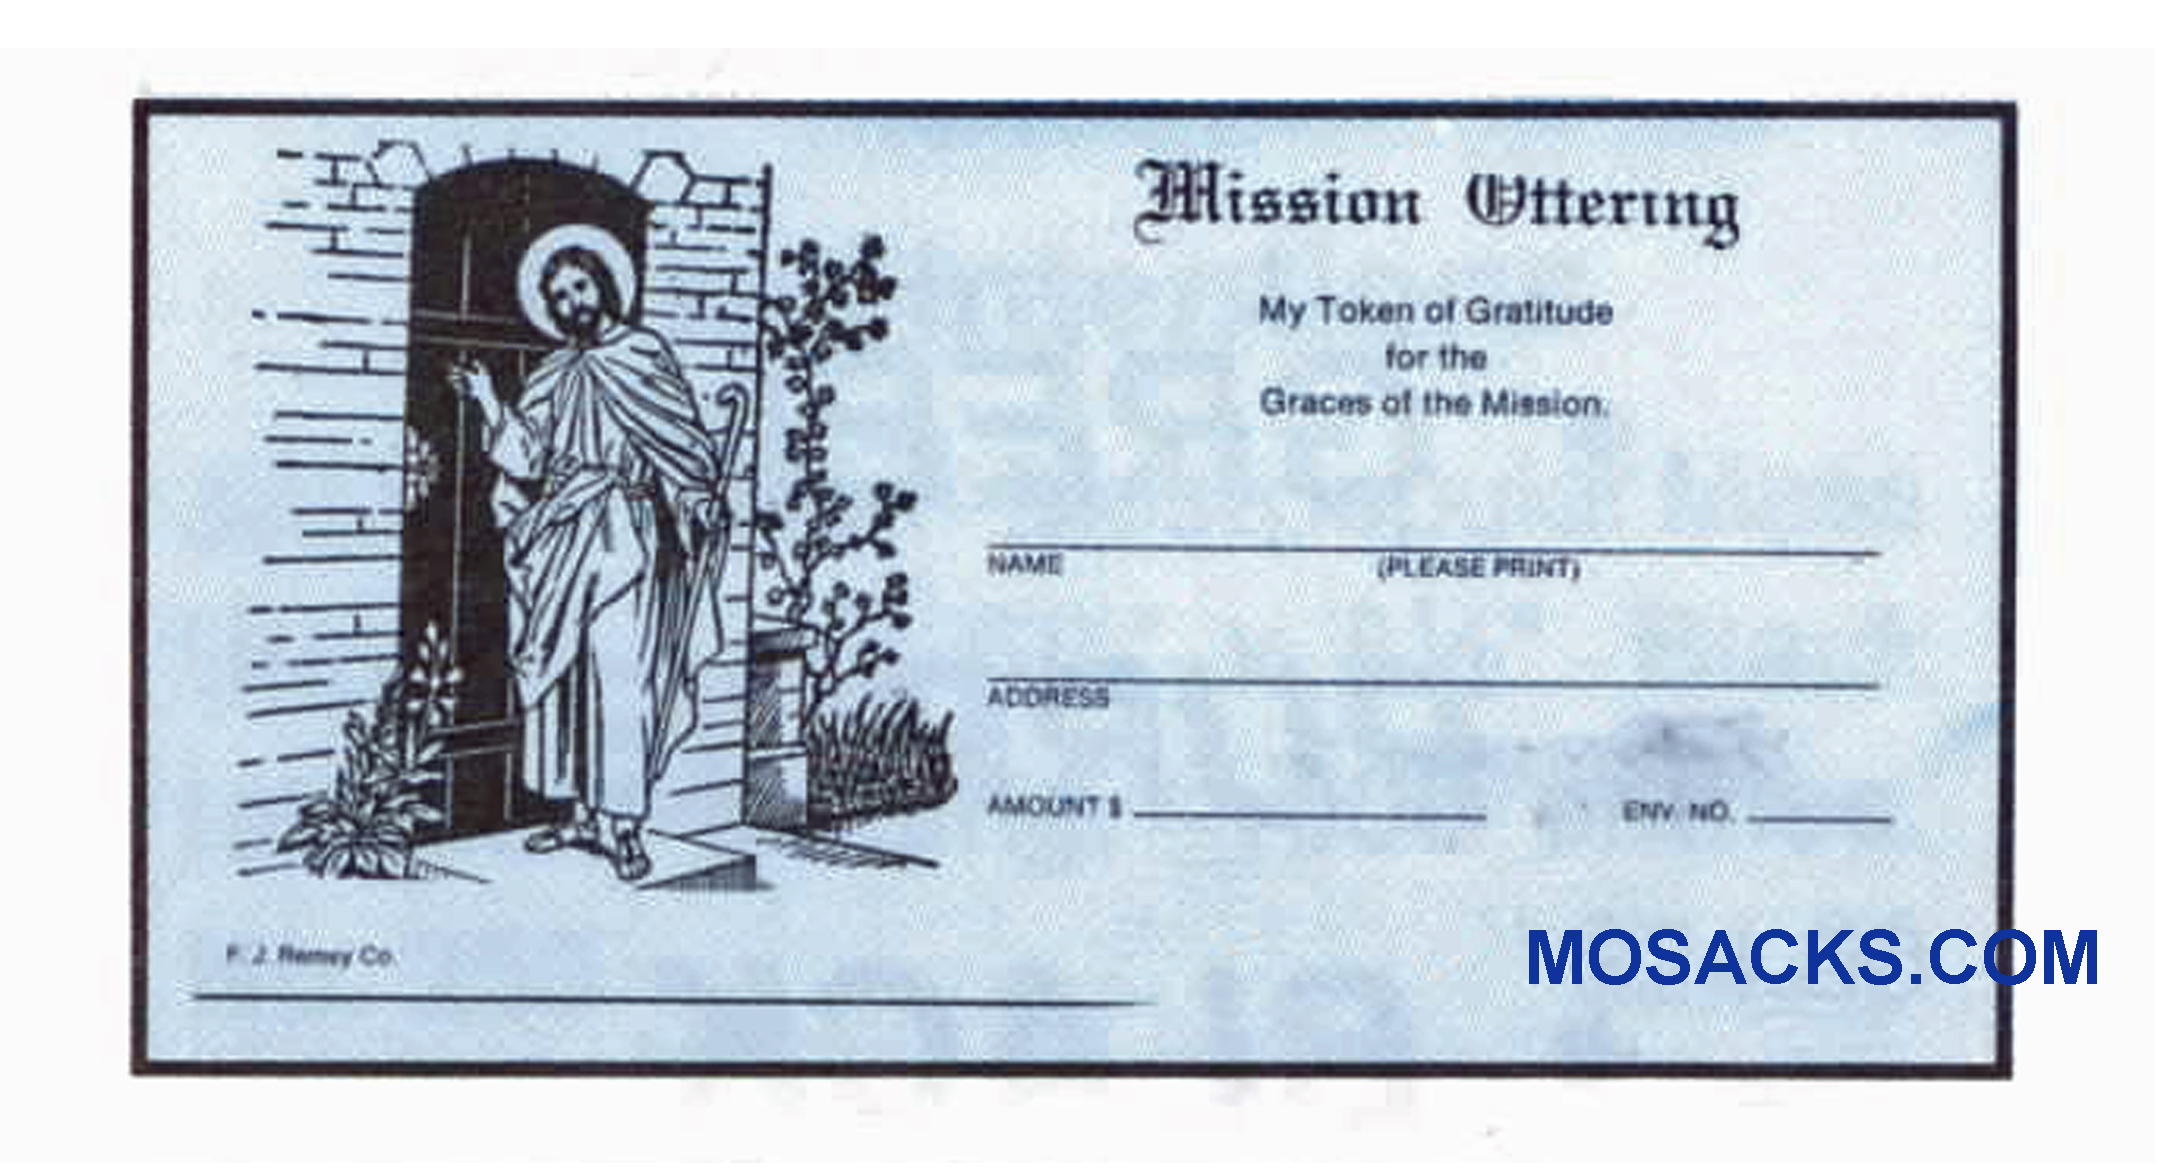 Mission Offering Envelope 6-1/4 x 3-1/8 #304-365